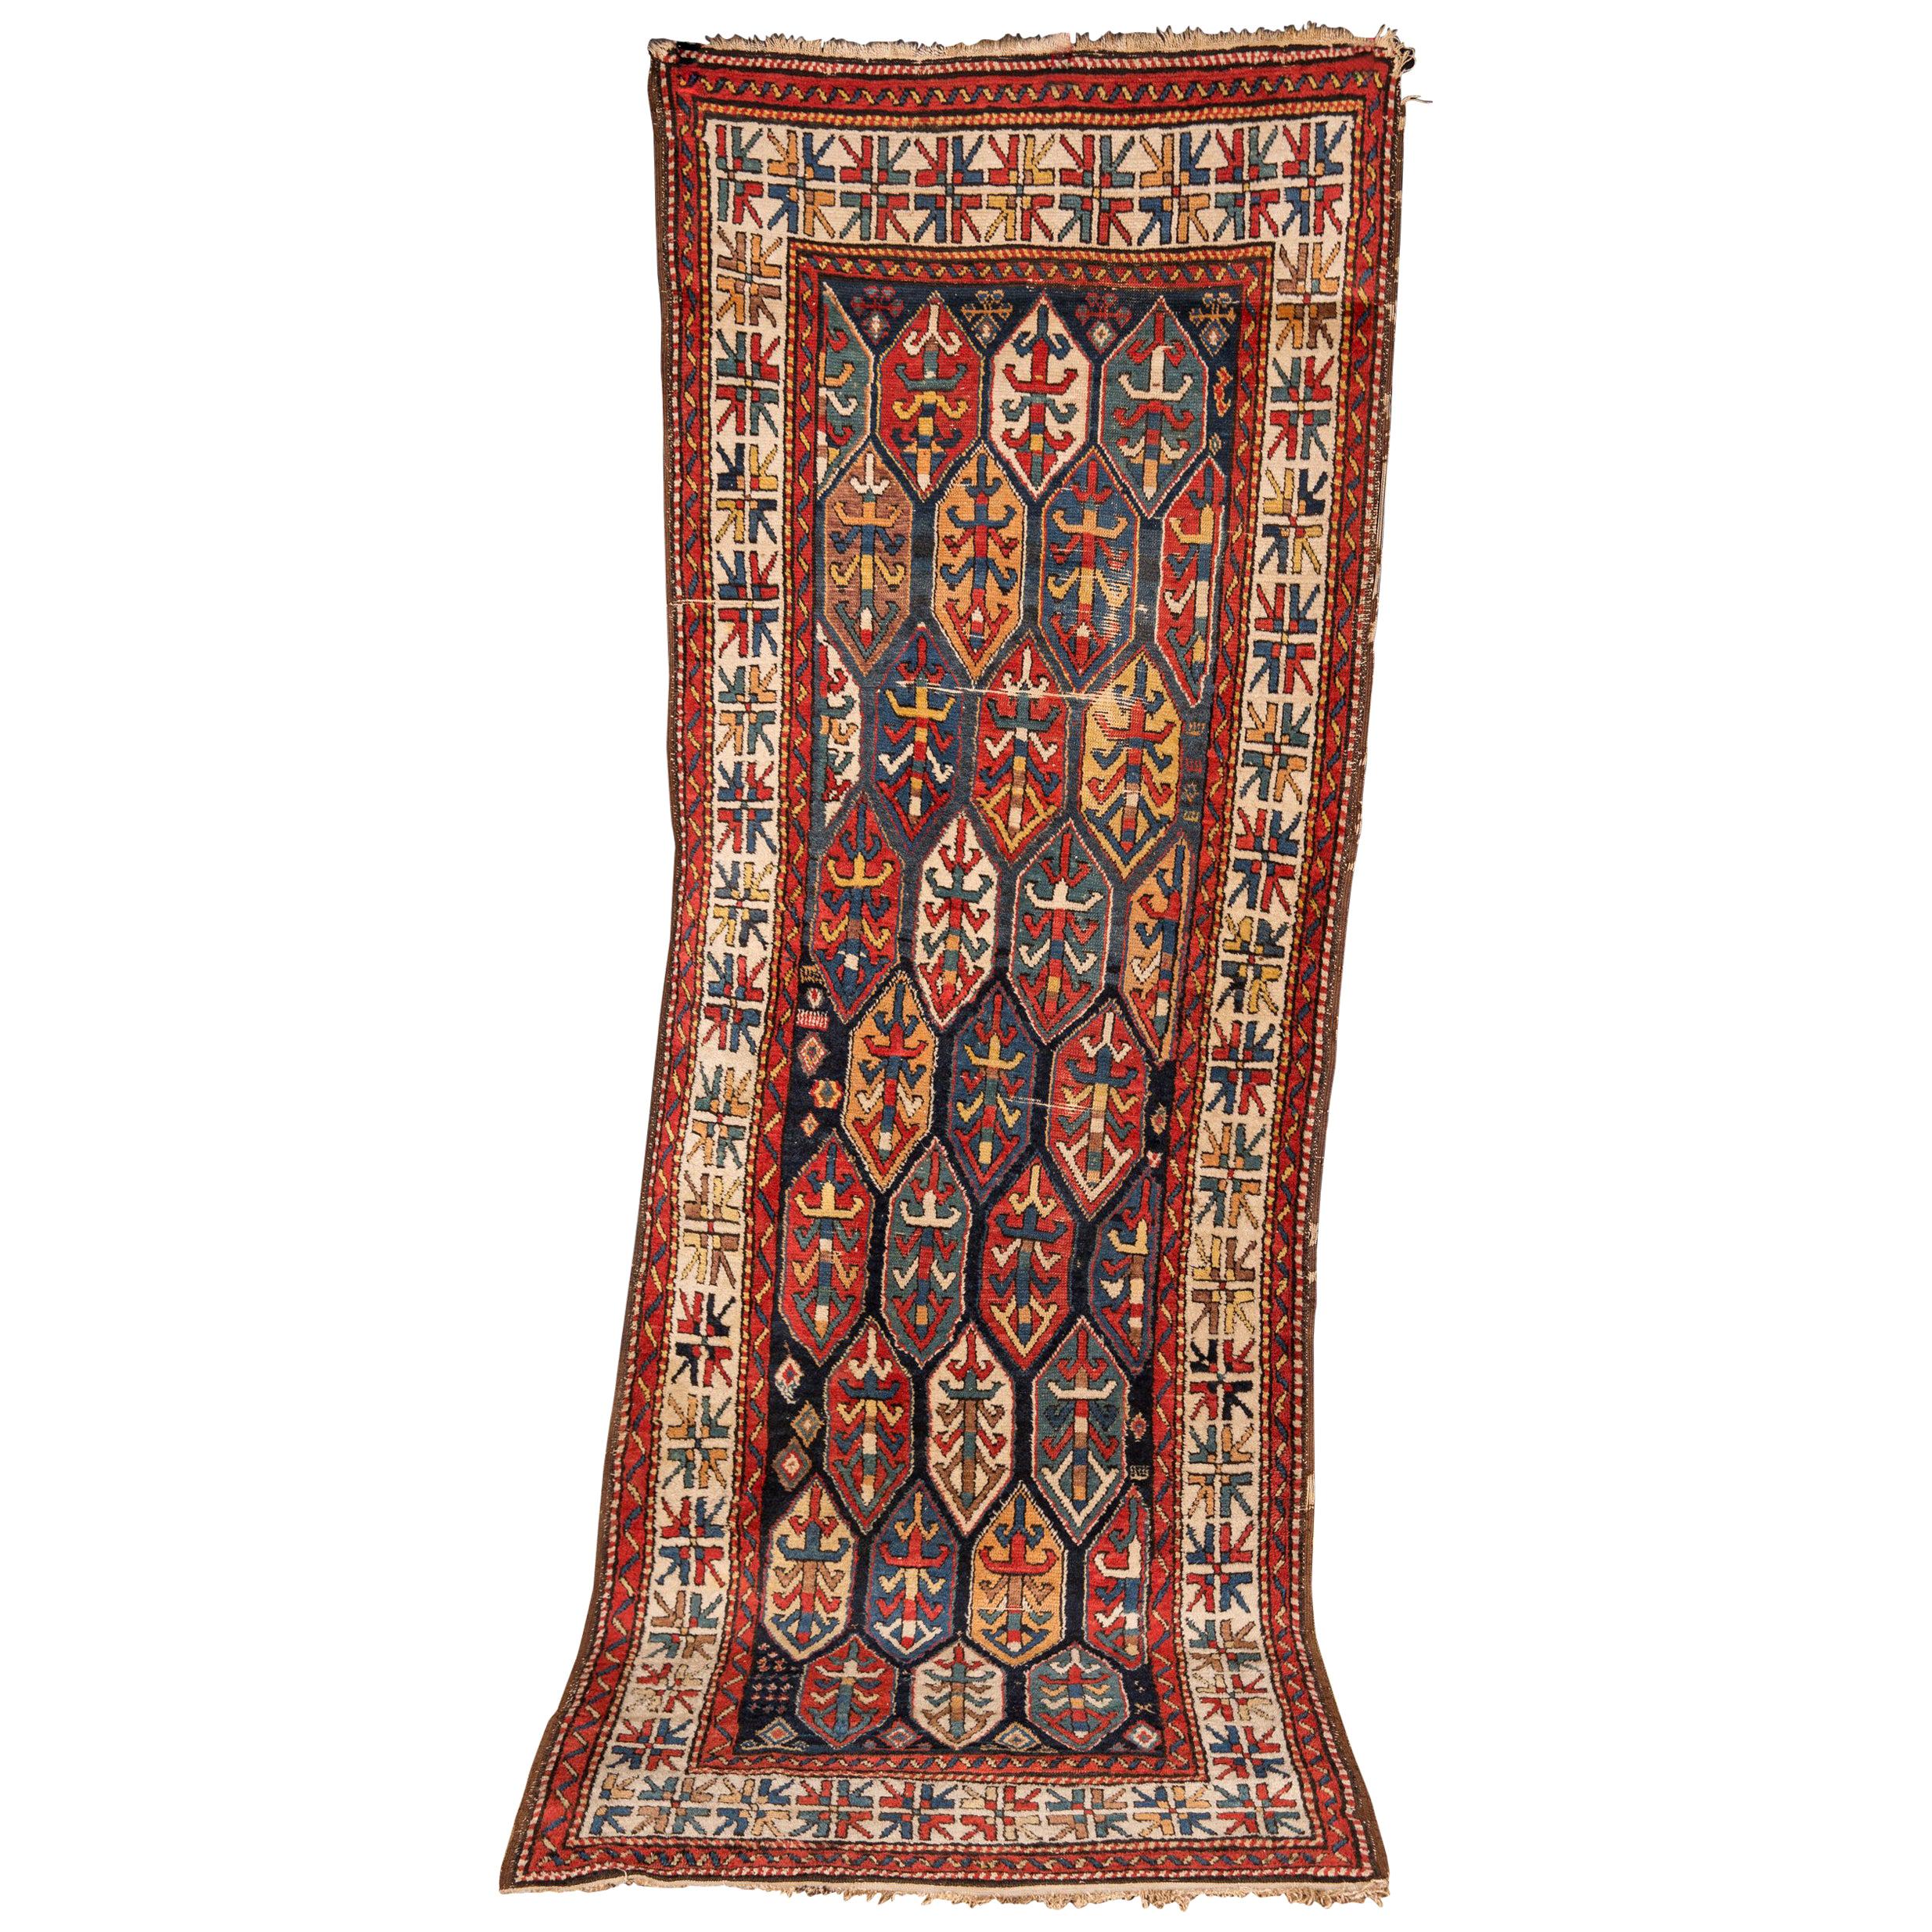 19th Century Antique Kazak Carpet